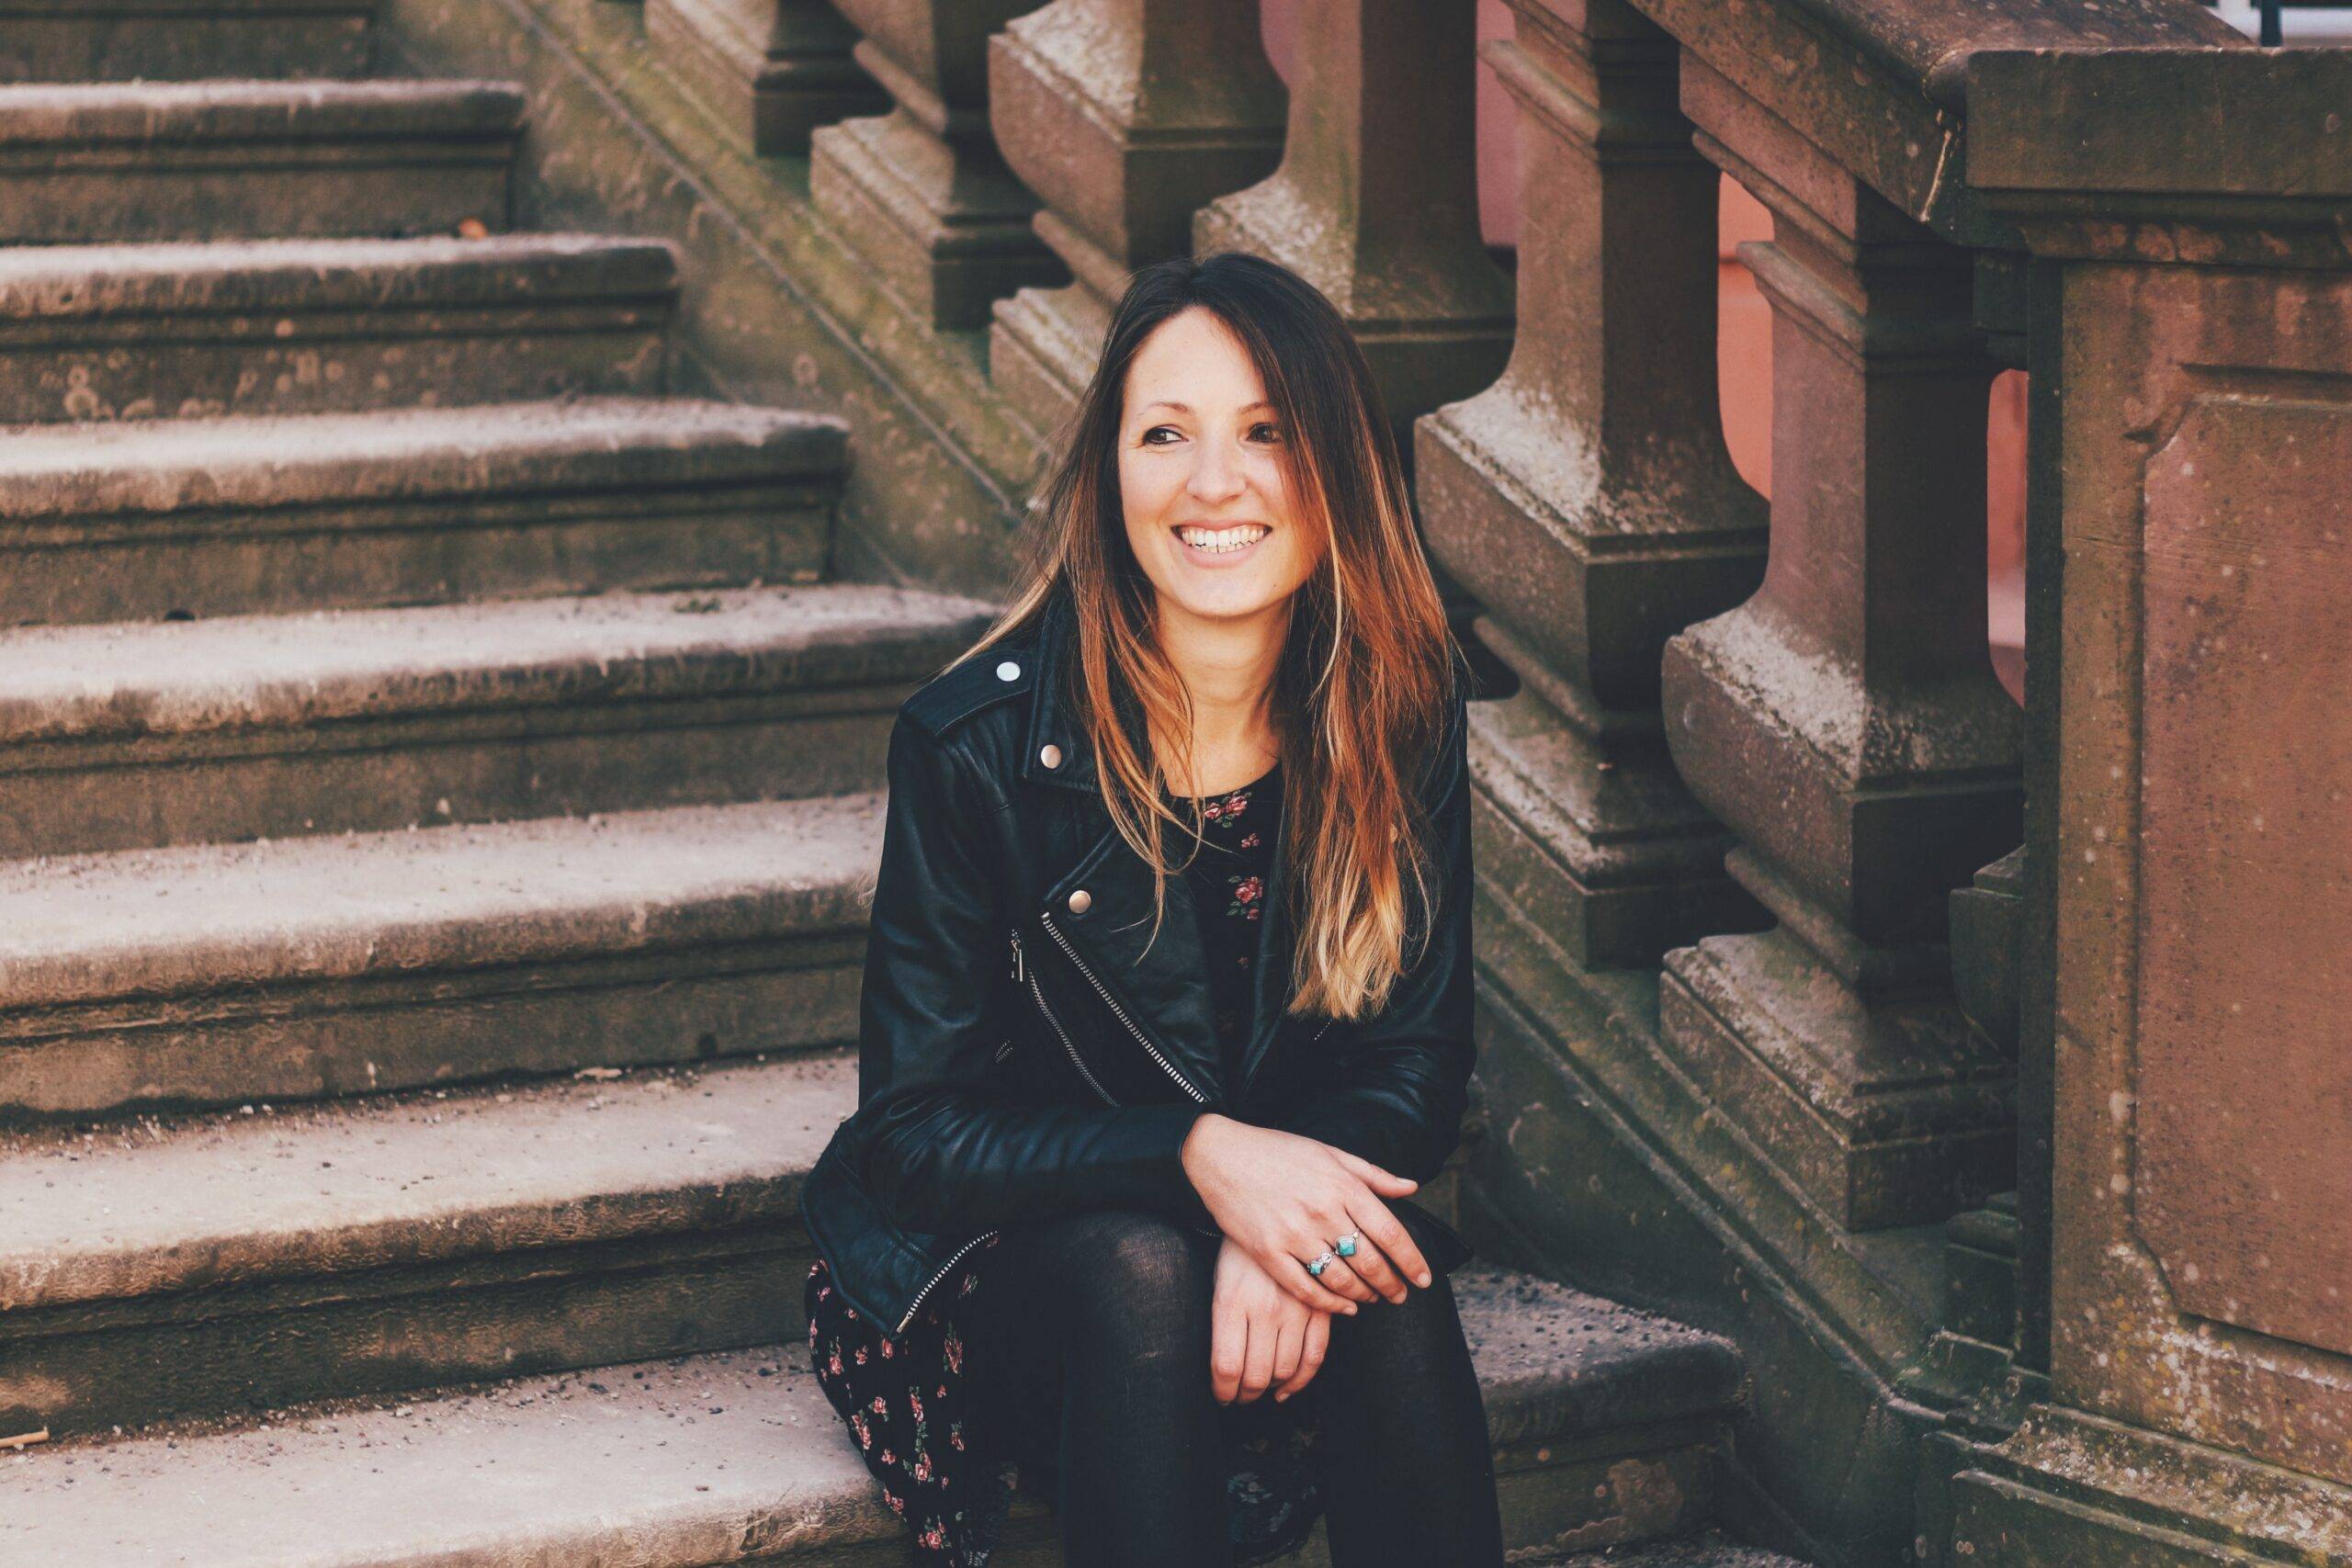 Reisebloggerin Sarah vom Blog Itchy Feet sitzt lächelnd auf einer Steintreppe.